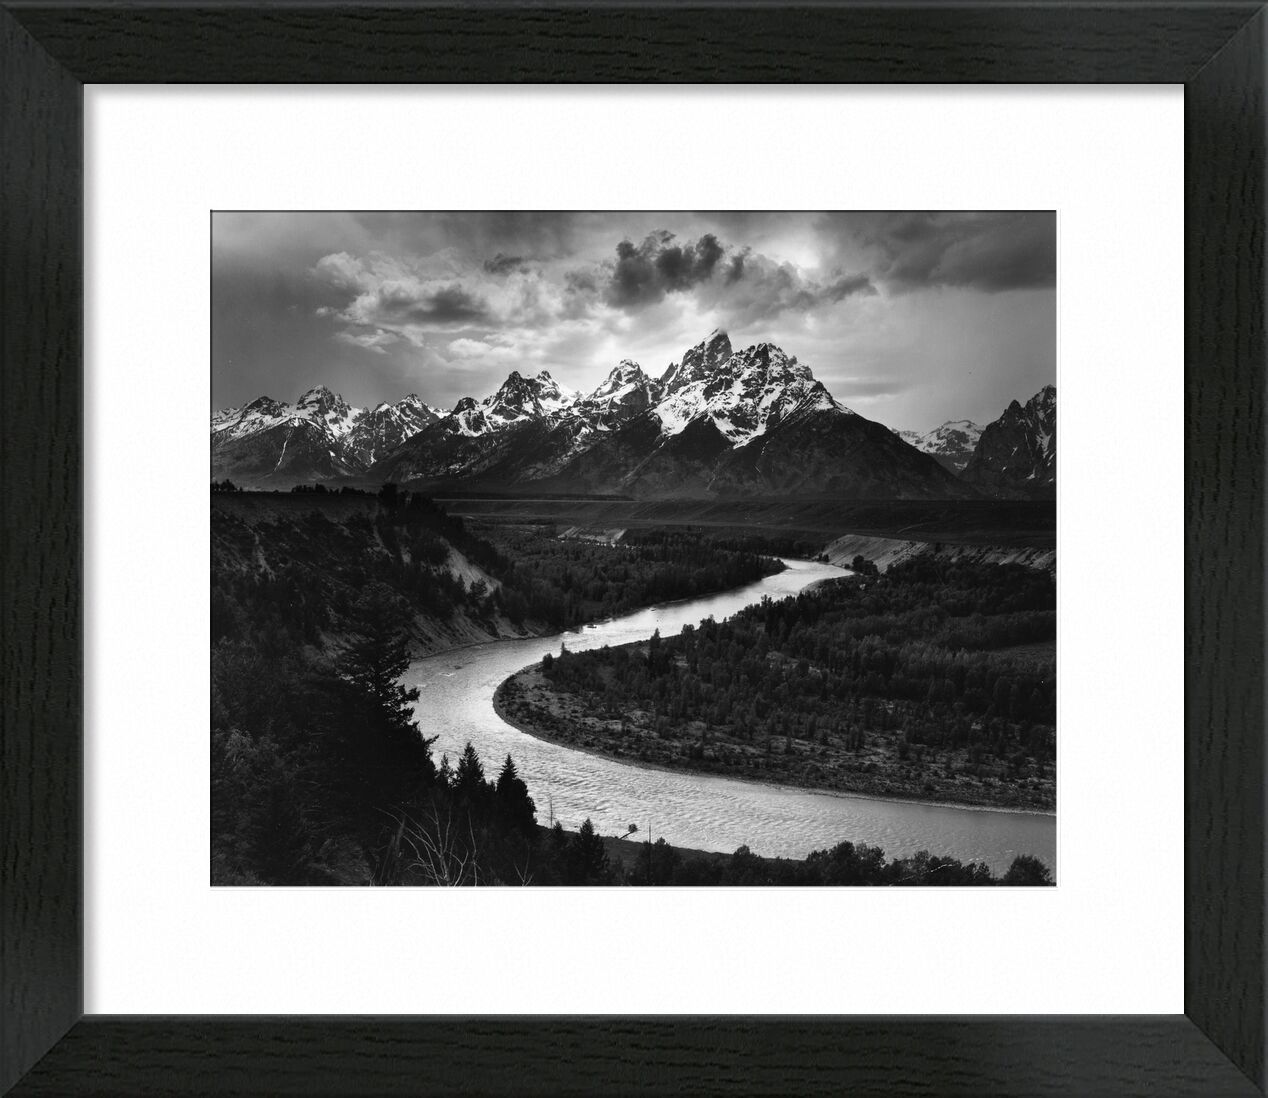 Snake River, Las Cruces - ANSEL ADAMS 1942 desde Bellas artes, Prodi Art, rayo de sol, sol, ligero, nubes, ANSEL ADAMS, nieve, invierno, montañas, río